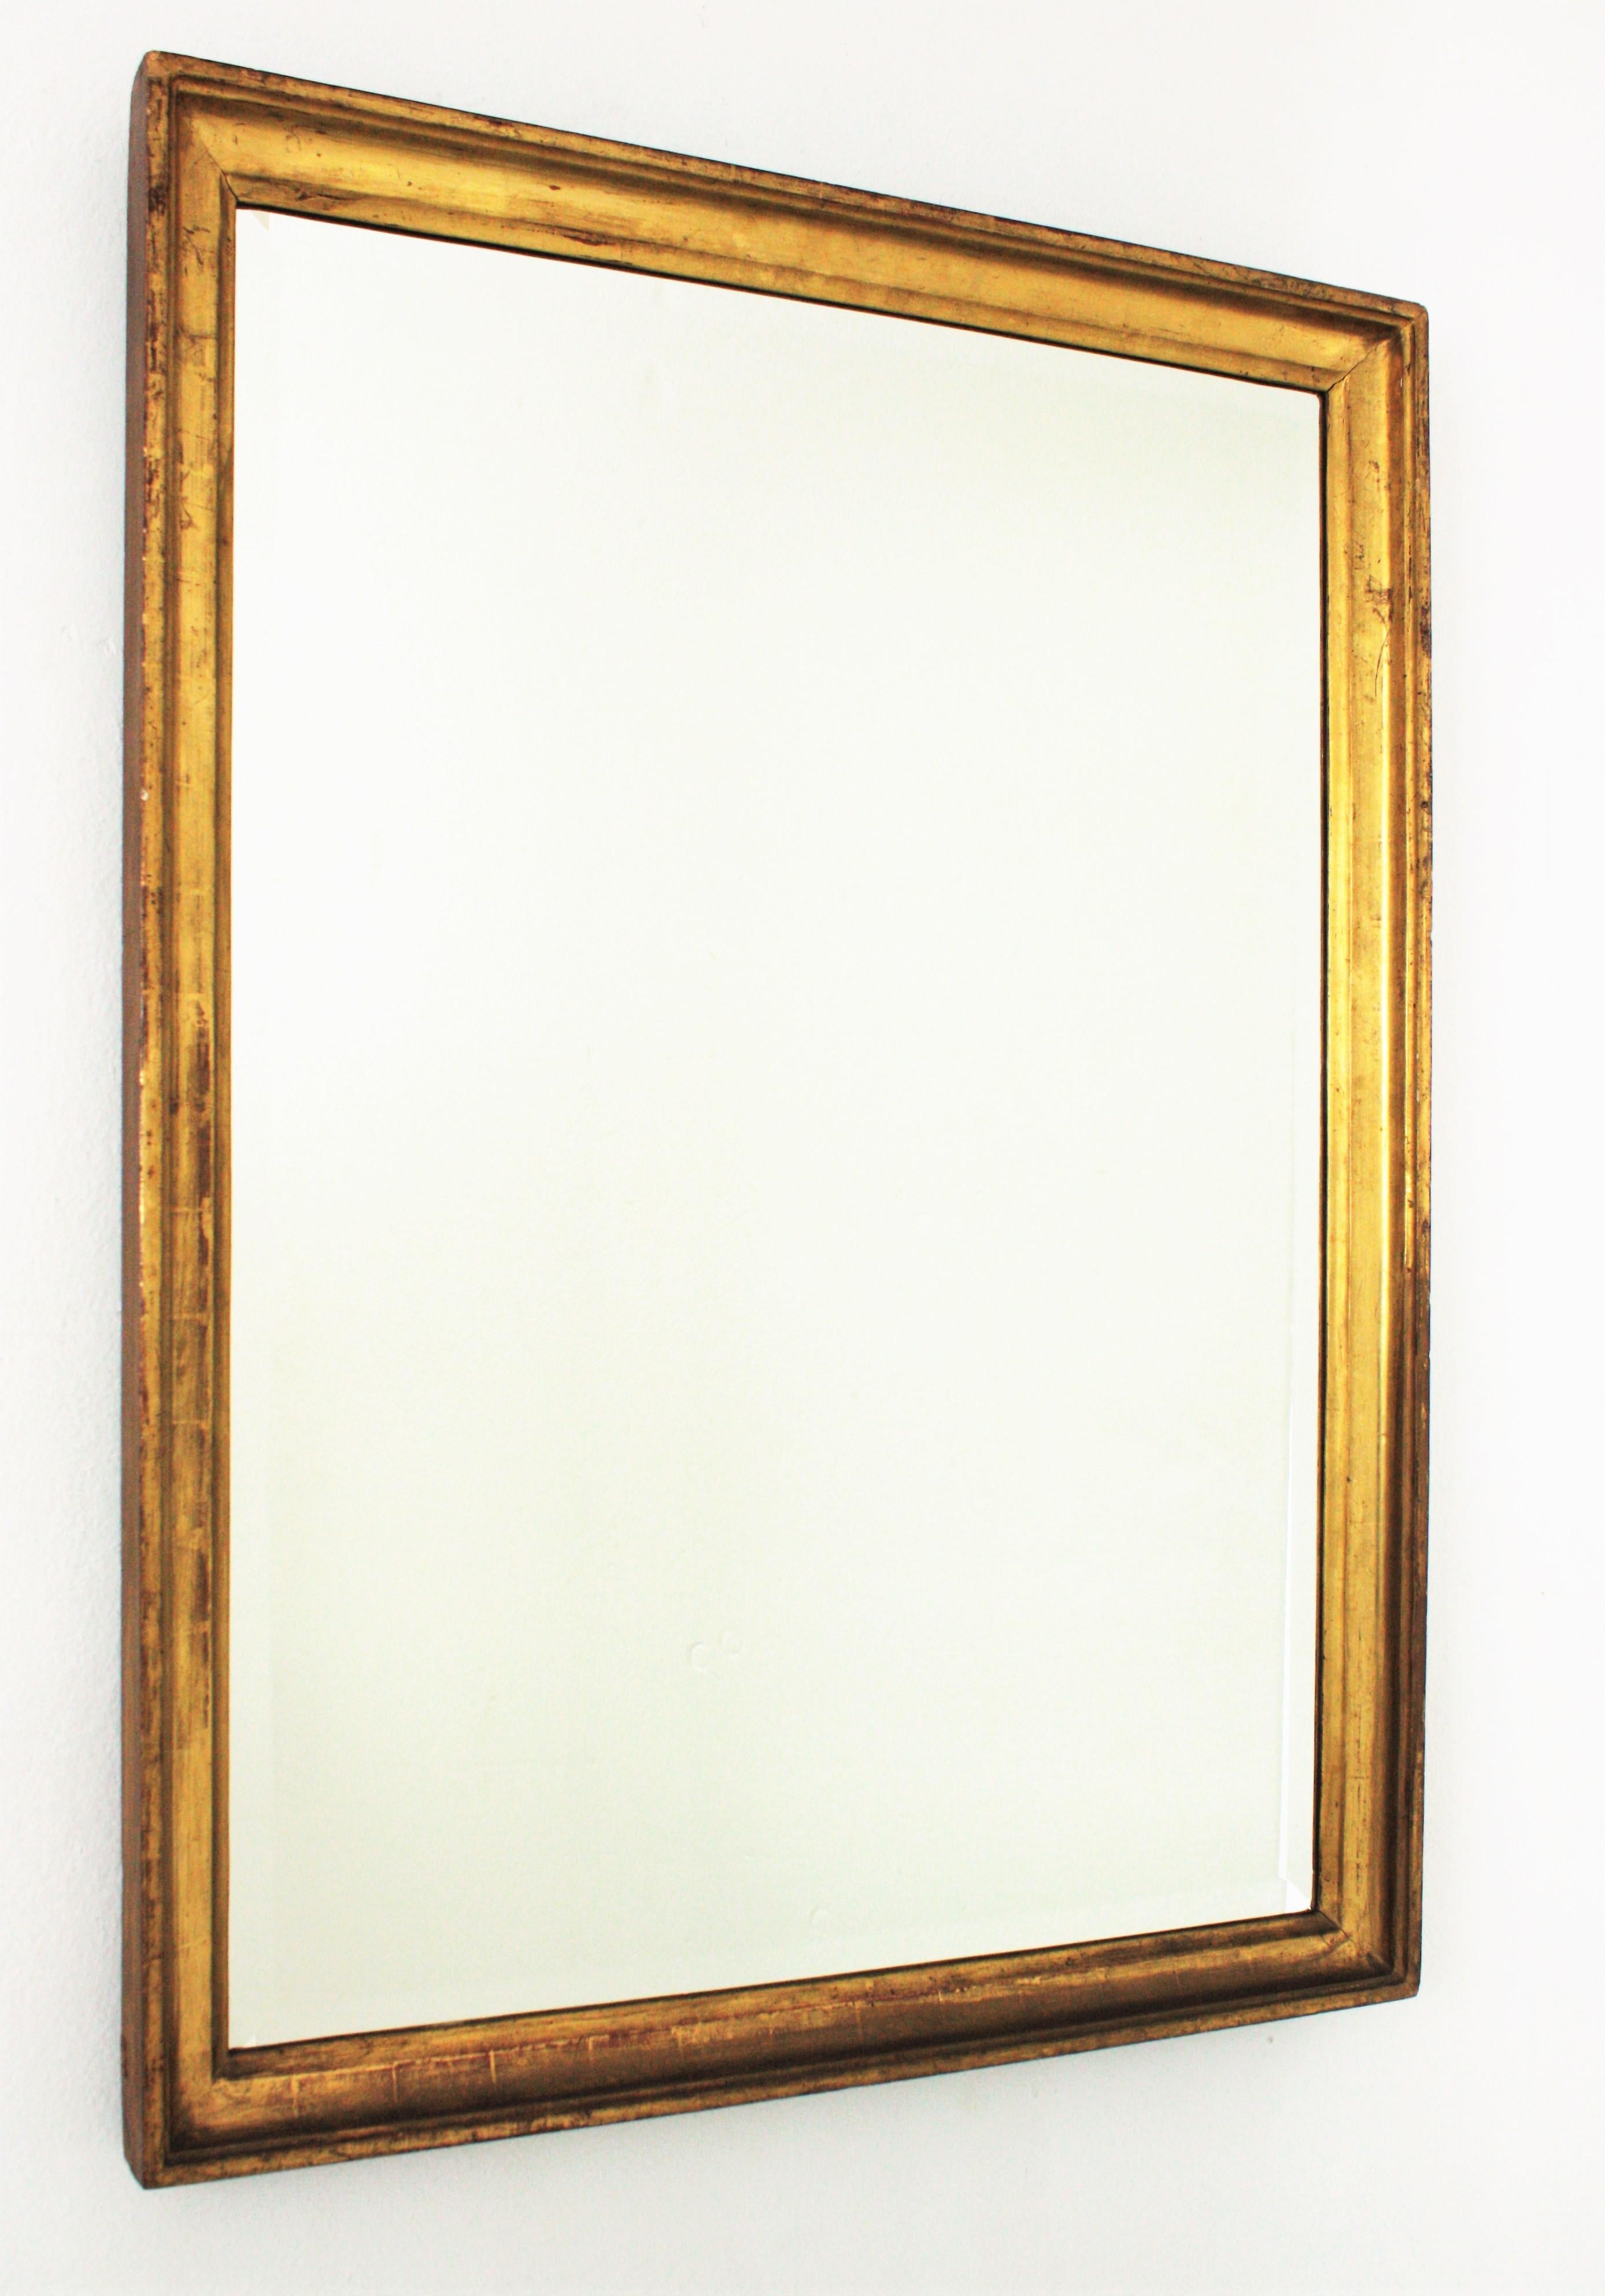 Elegant miroir rectangulaire espagnol du 19ème siècle en bois doré à la feuille d'or avec verre biseauté.
Style Empire.
Fabriqué en bois sculpté, gesso et finition à la feuille d'or 24 carats. Il présente une belle patine d'usage.
Il sera un bon